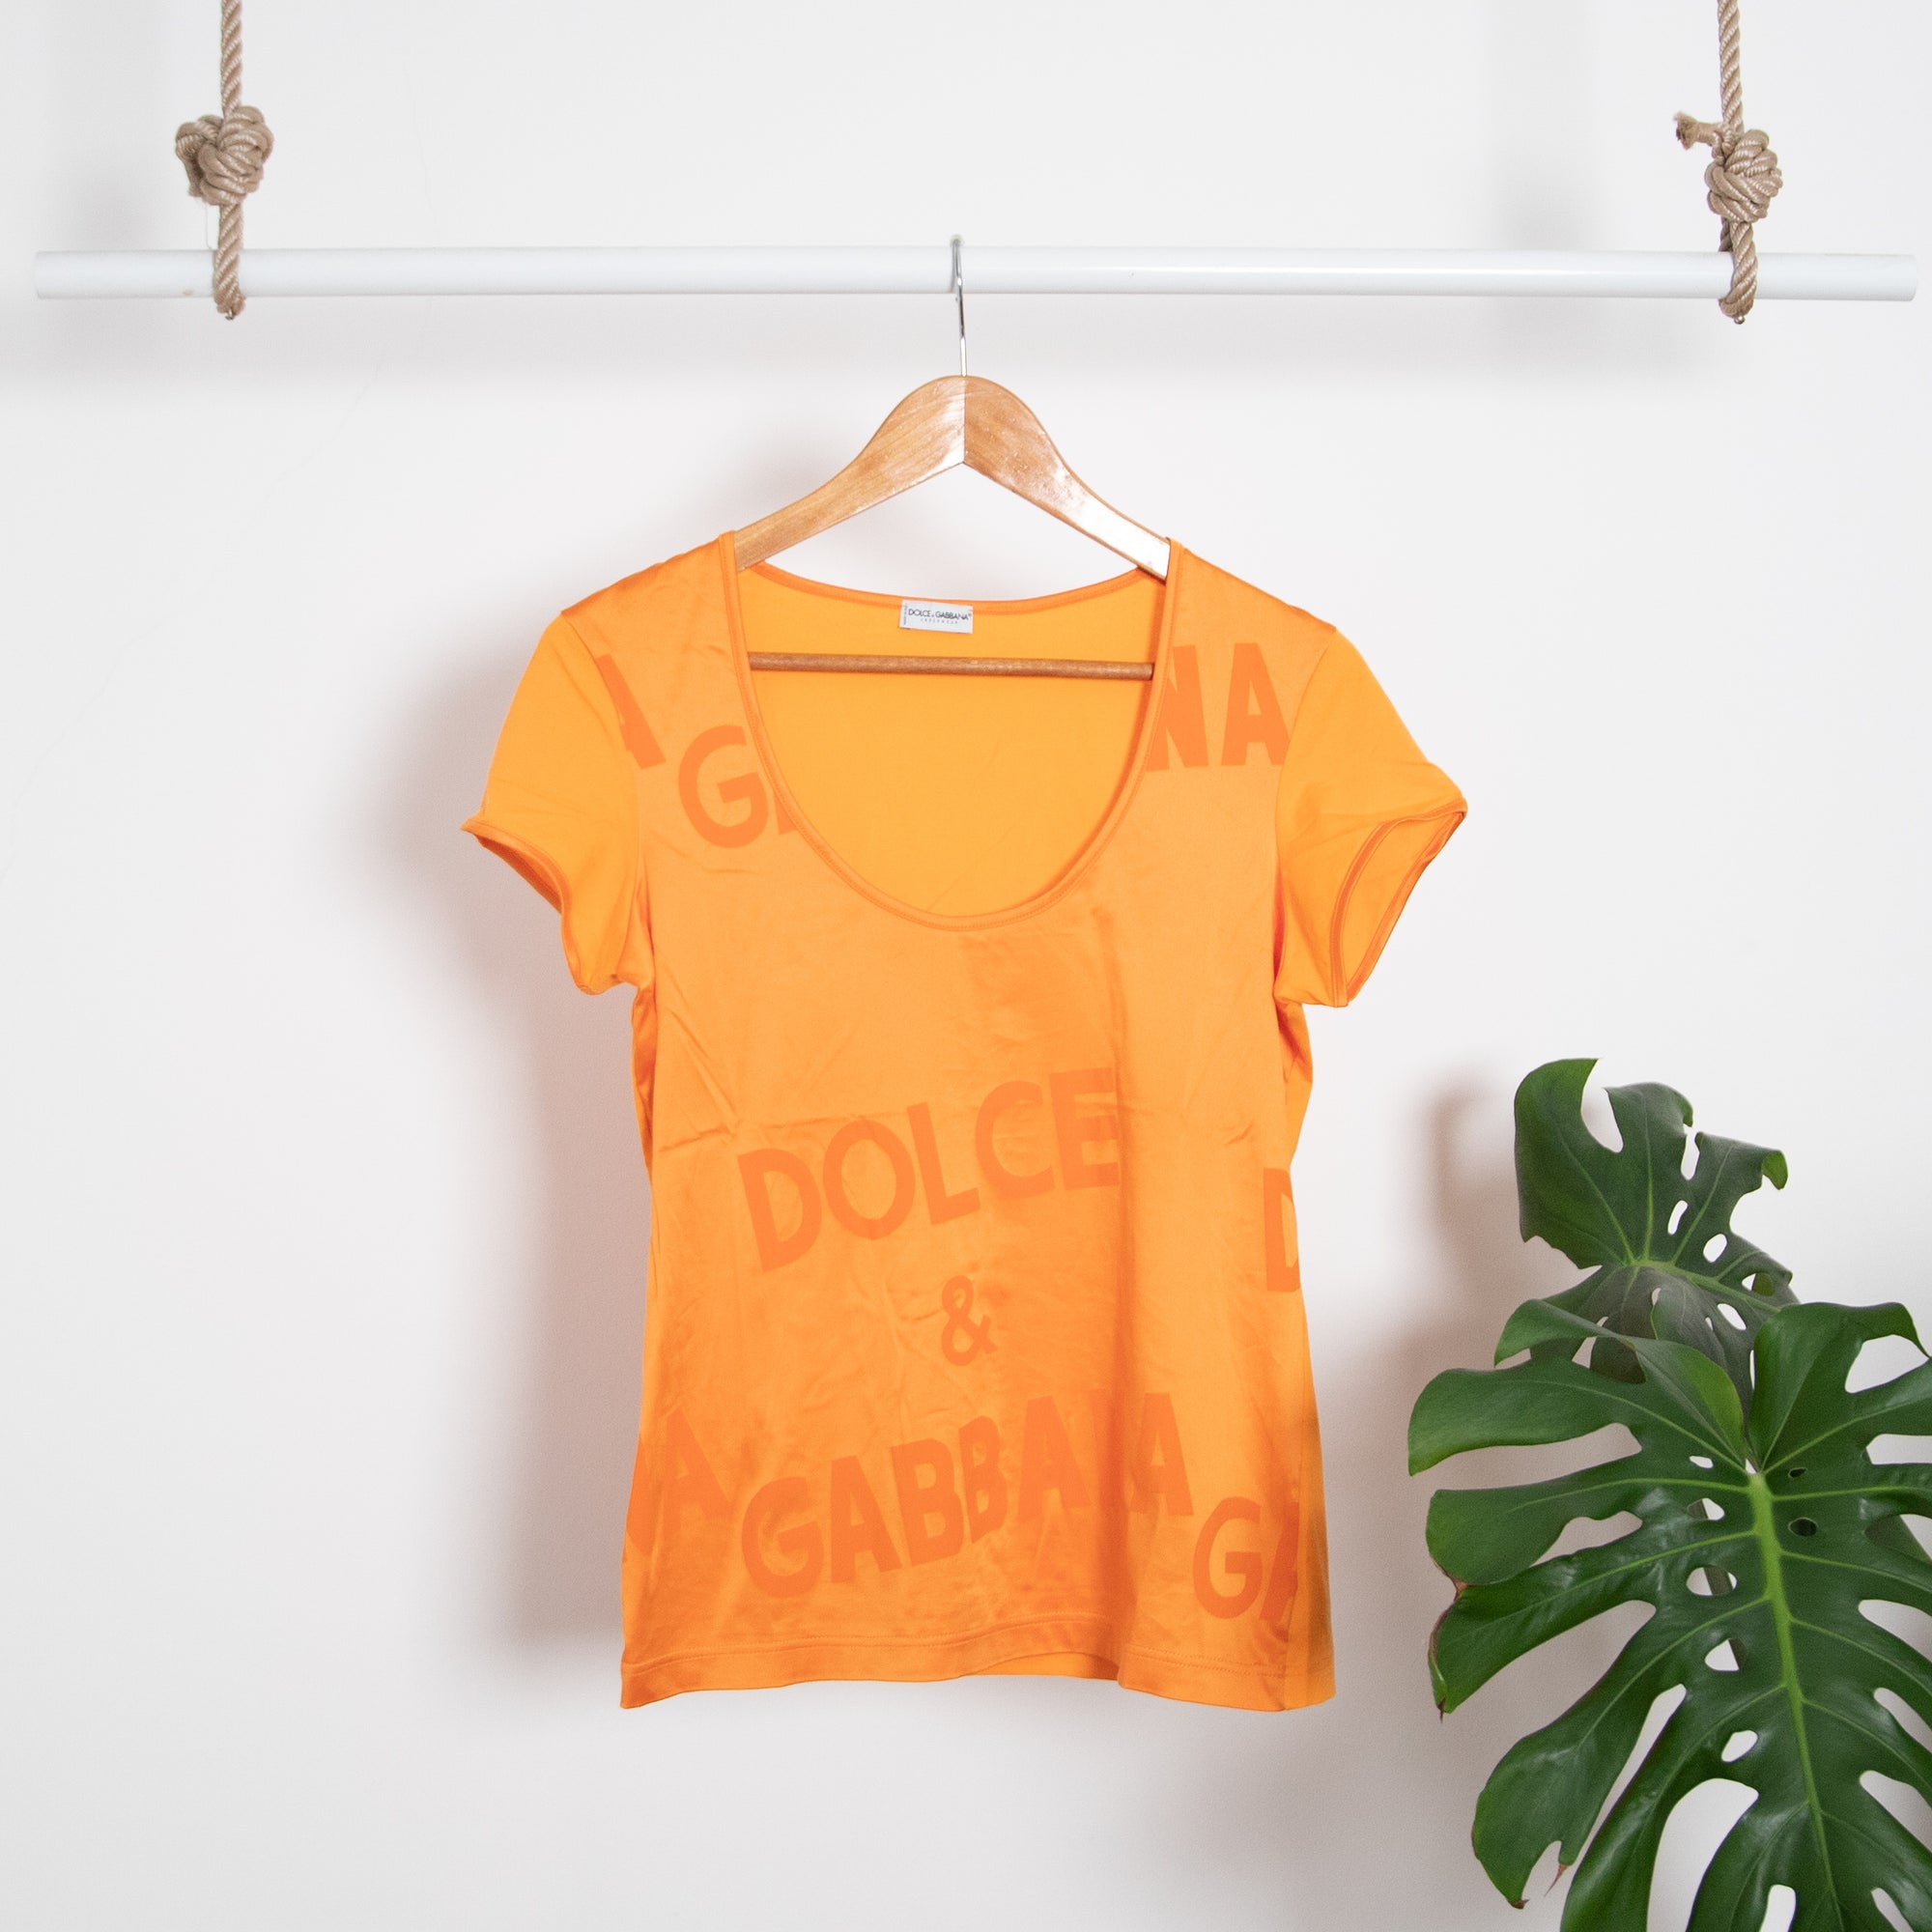 T-shirt Dolce&Gabanna